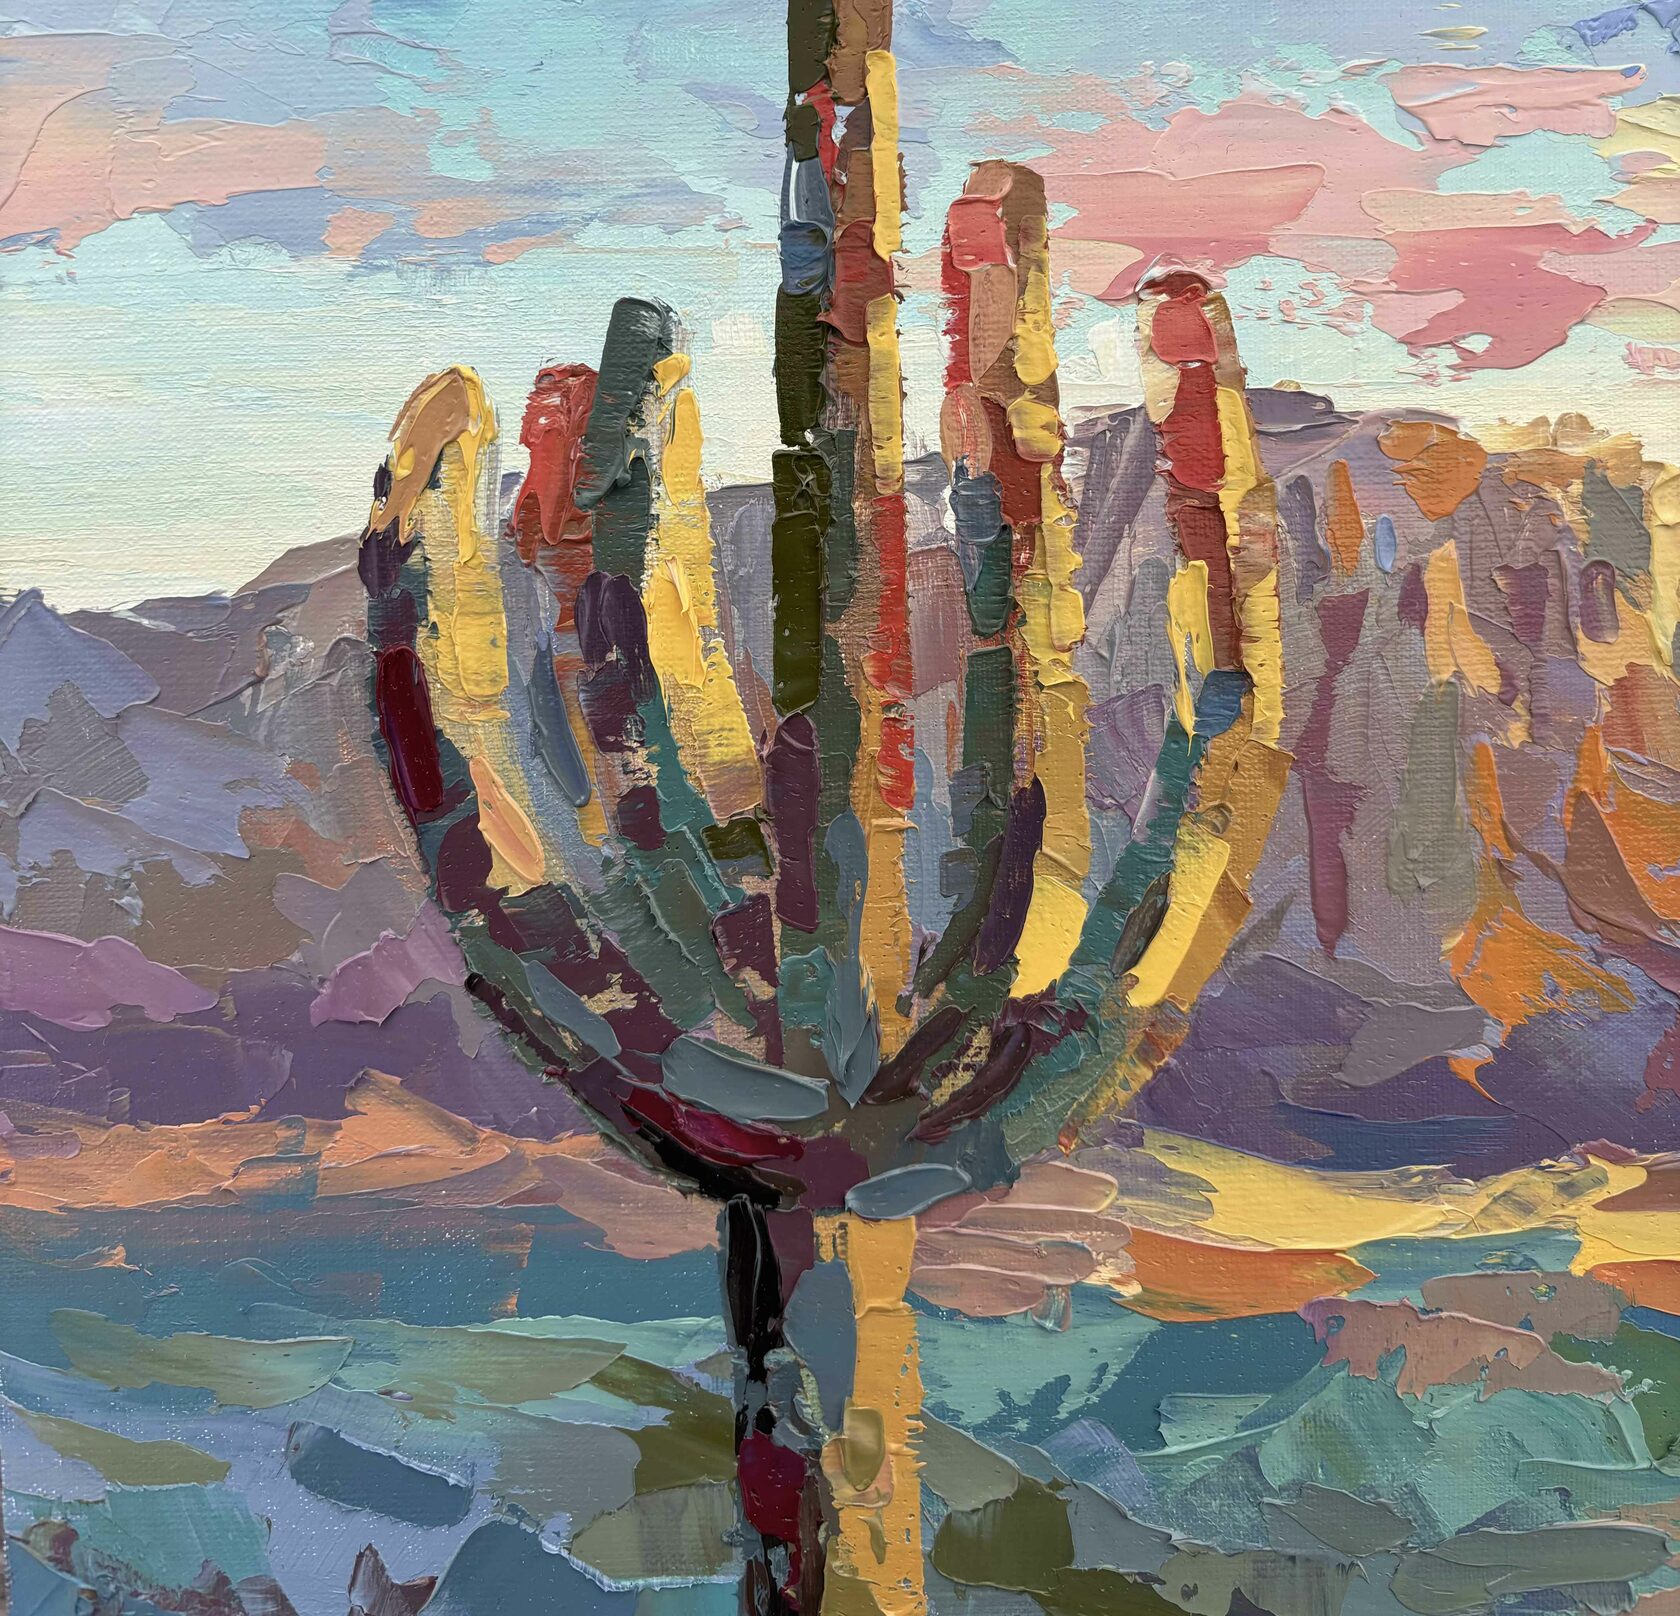 Saguaro oil paintings, sunset in the desert